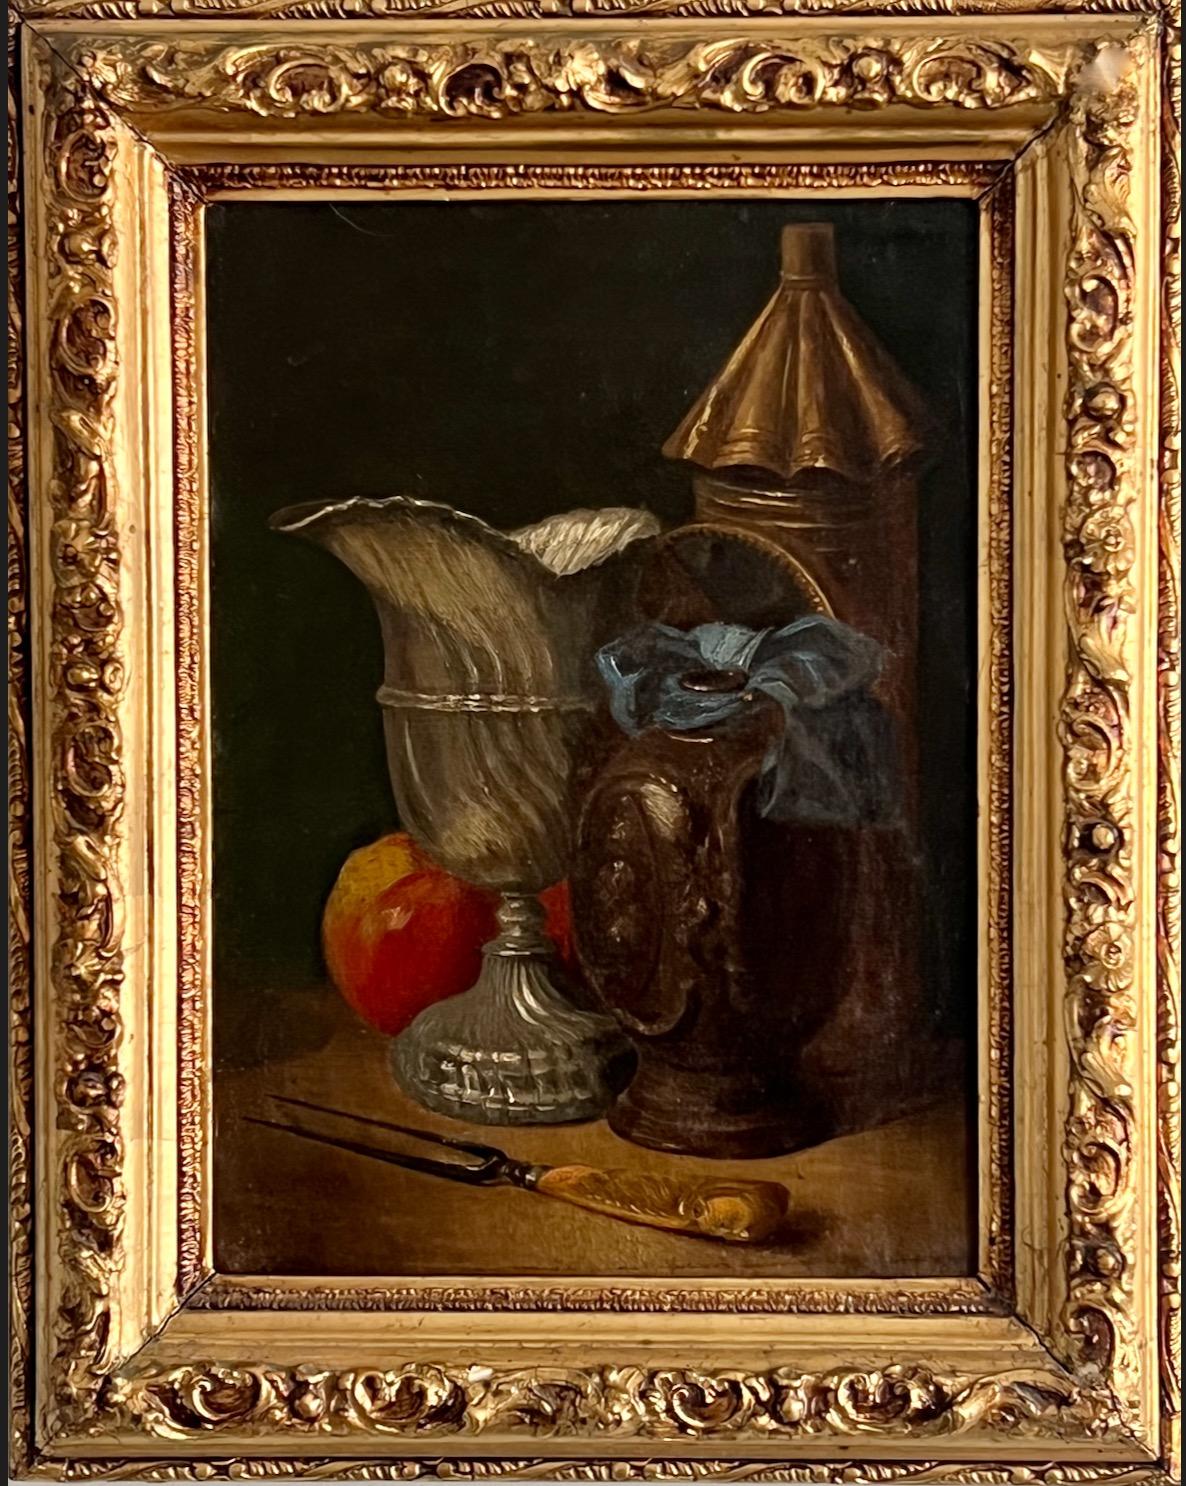 Unknown Still-Life Painting – Stillleben des 19. Jahrhunderts, Eine Laterne, ein Tankard, eine Weinkanne, ein Apfel und eine Gabel